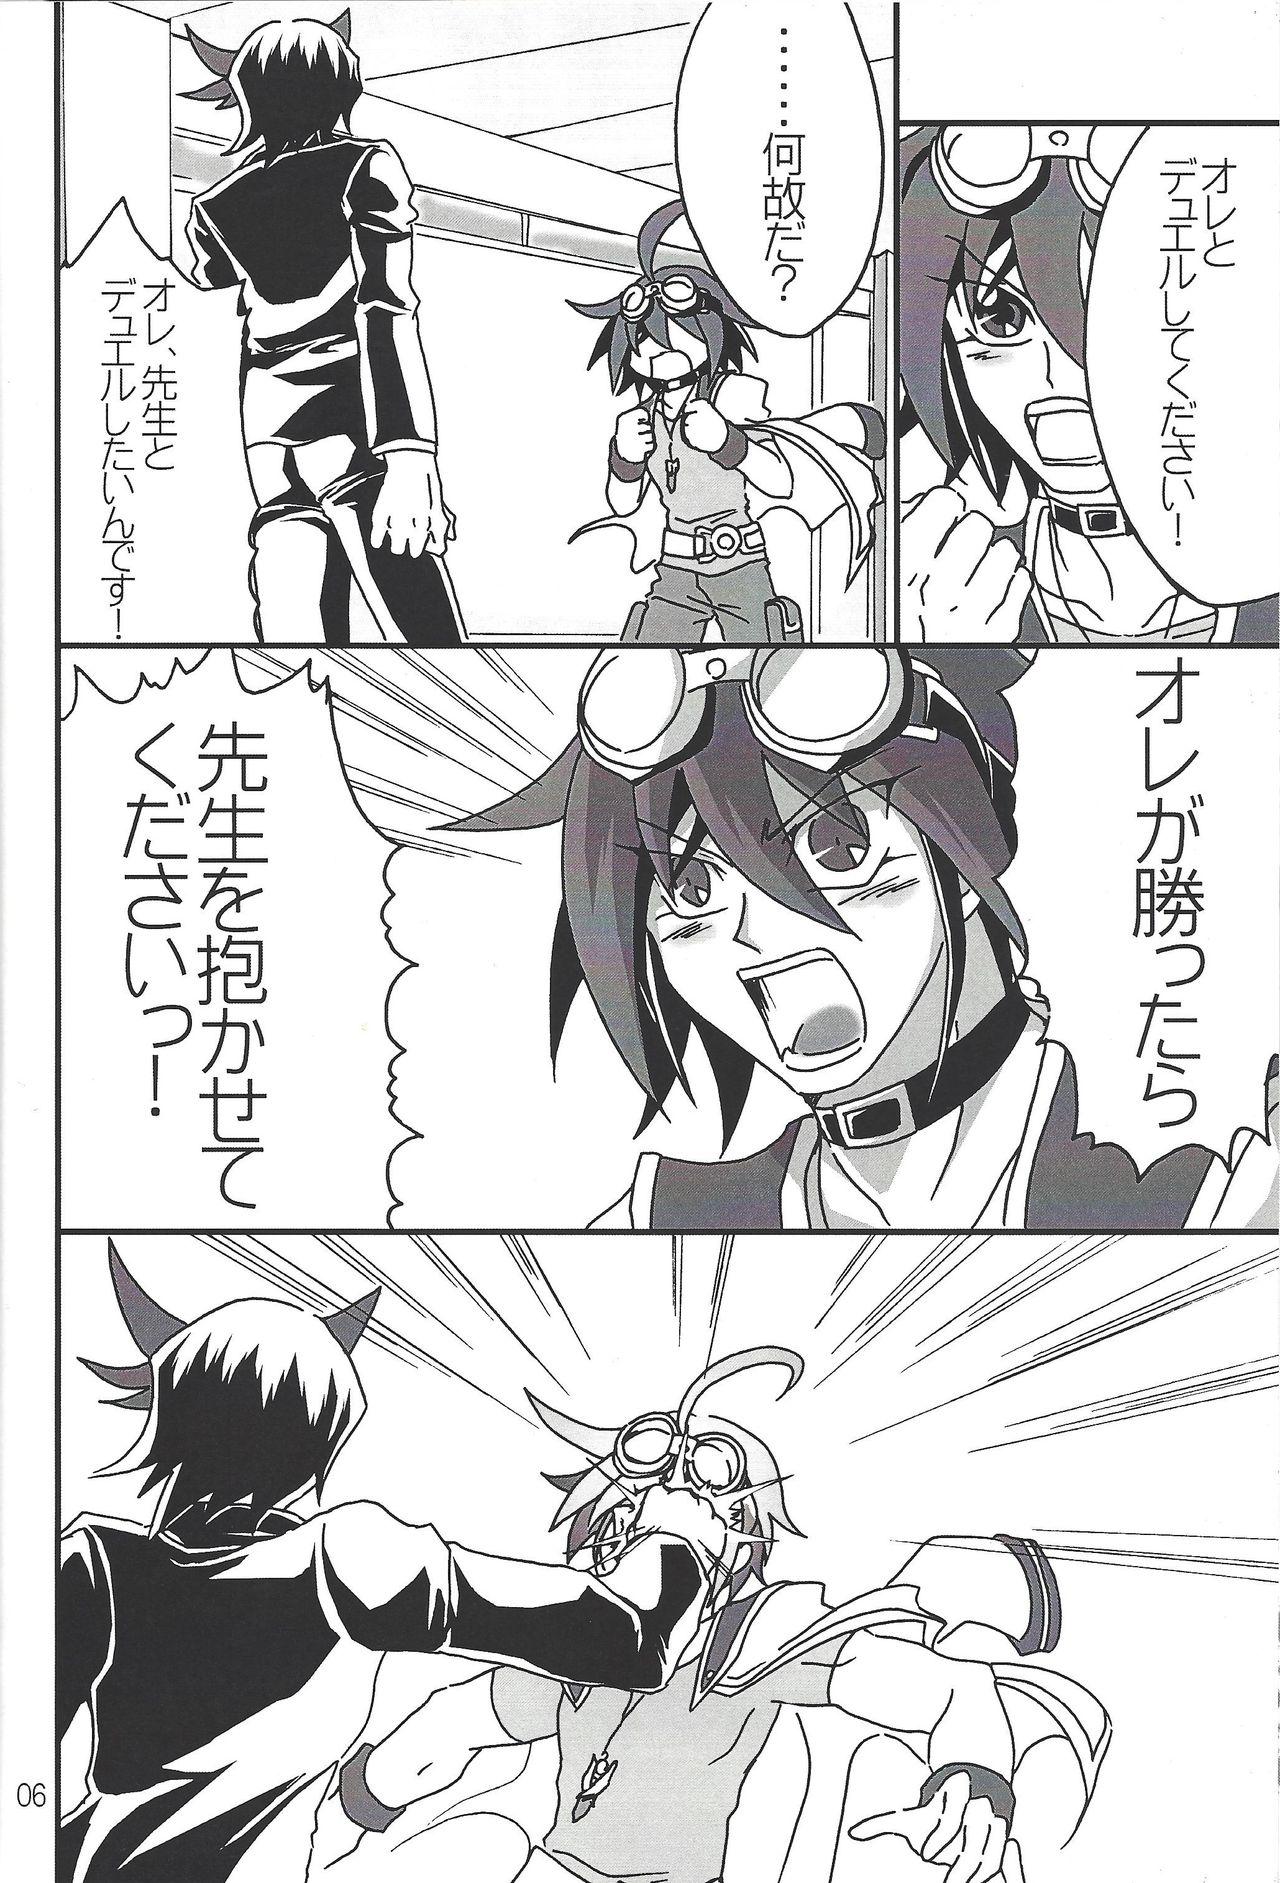 Women Sucking Ikenai!! Kurosaki sensei - Yu-gi-oh arc-v Wam - Page 4